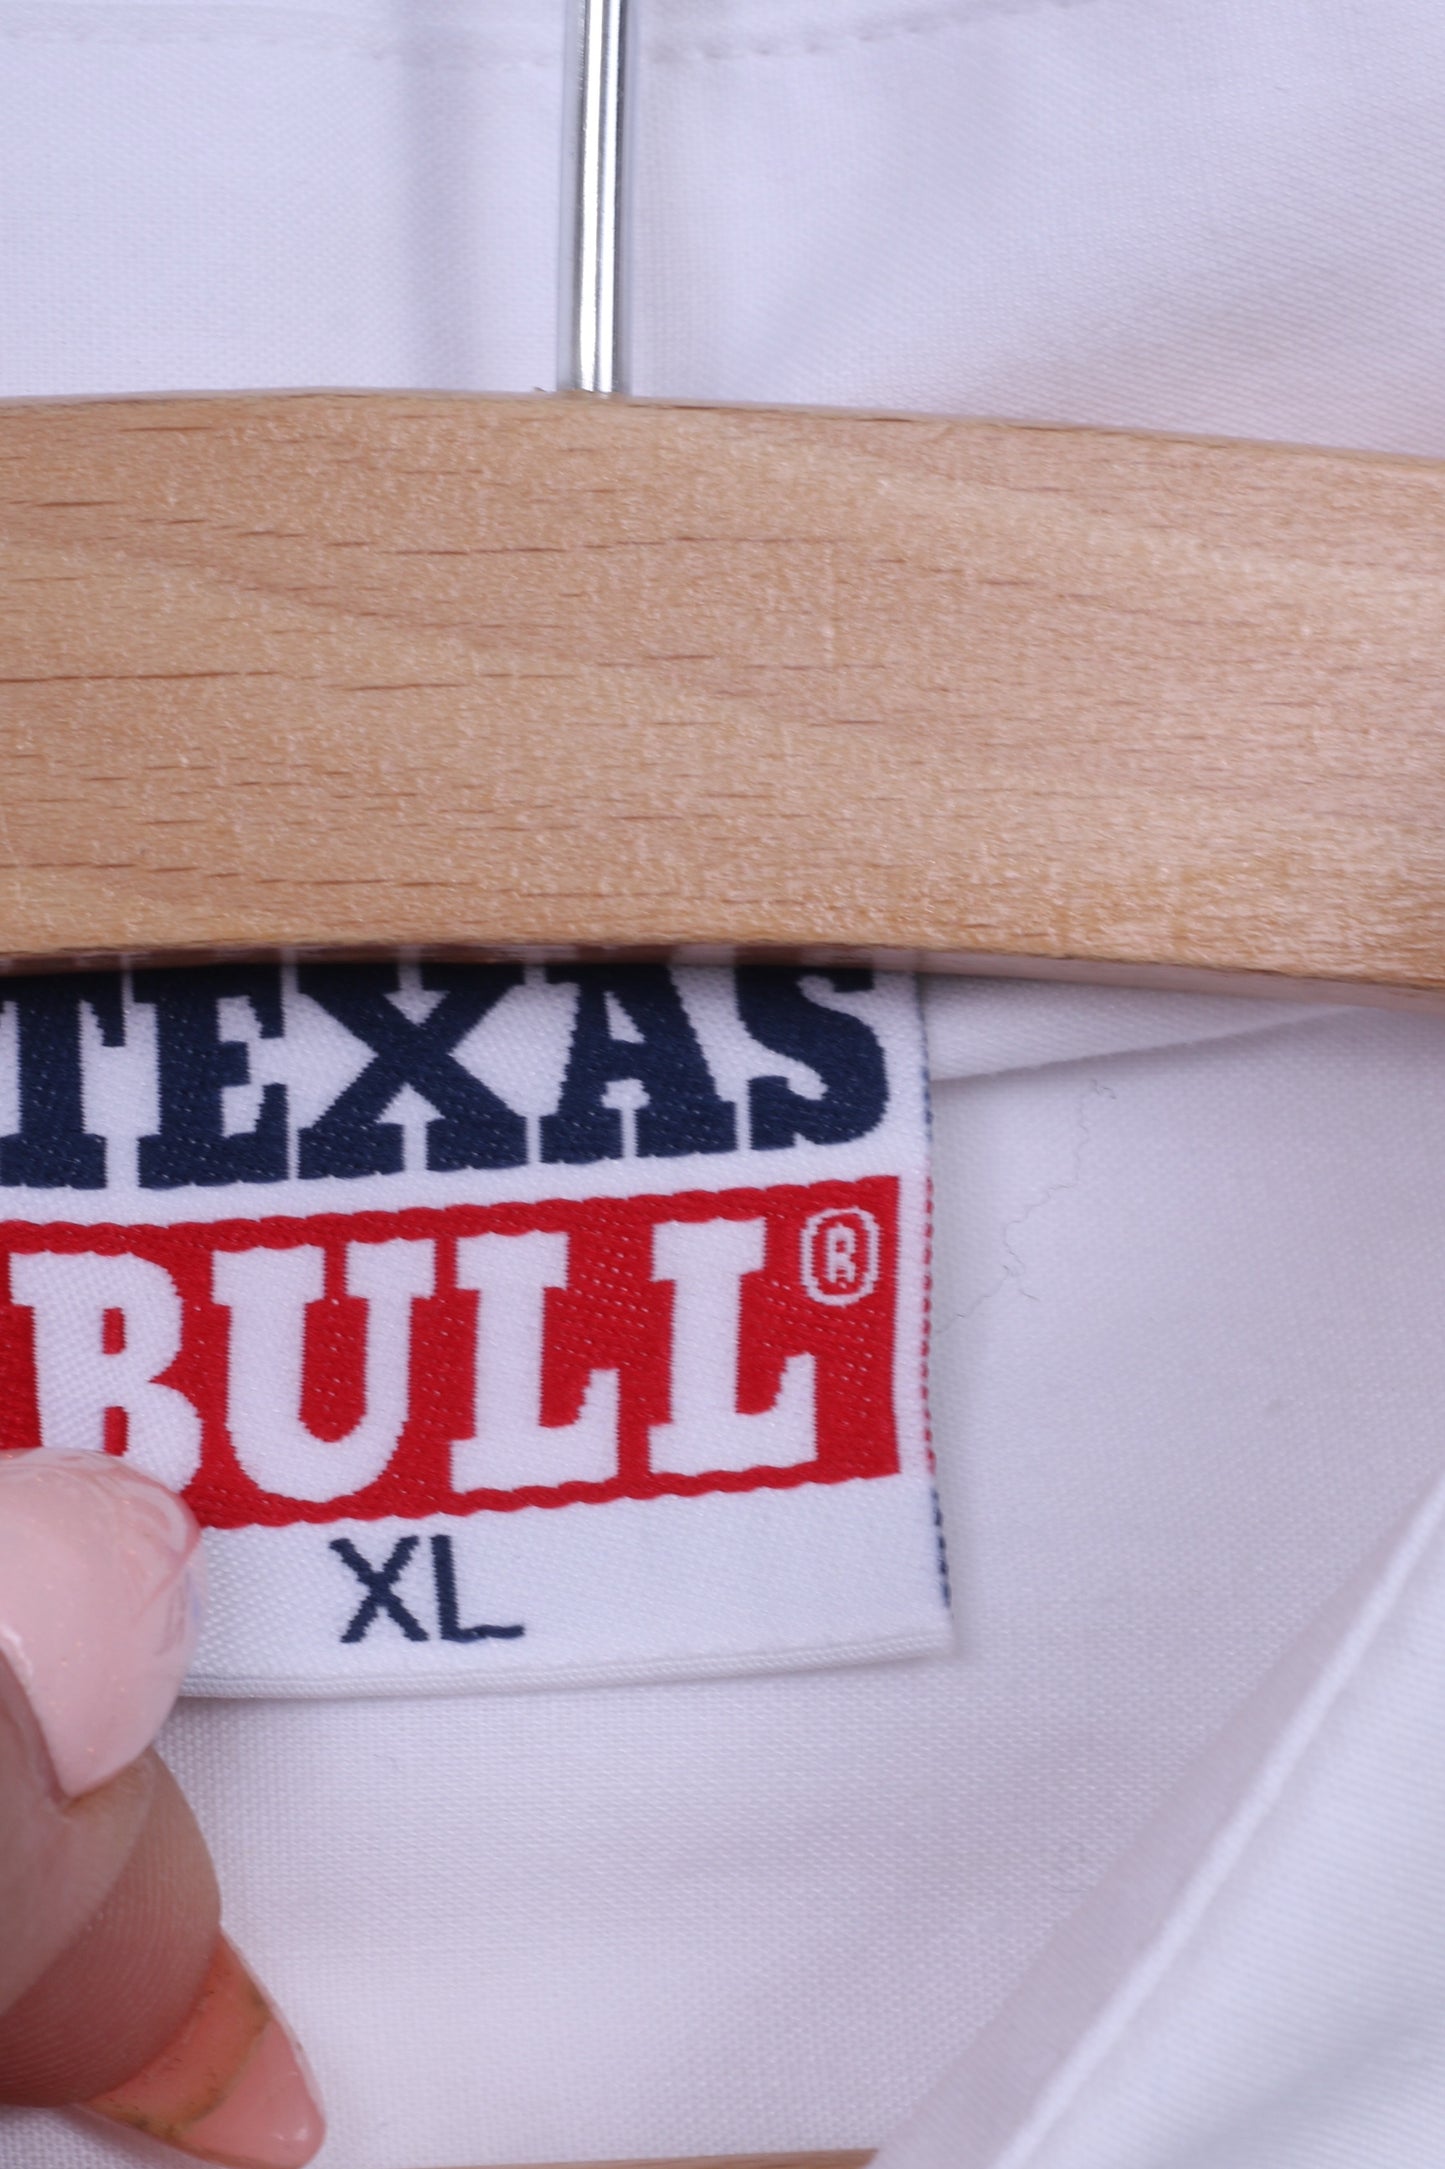 Texas Bull Tipper Klub Ehc Visp Chemise décontractée XL pour homme Blanc Hockey sur glace Coton